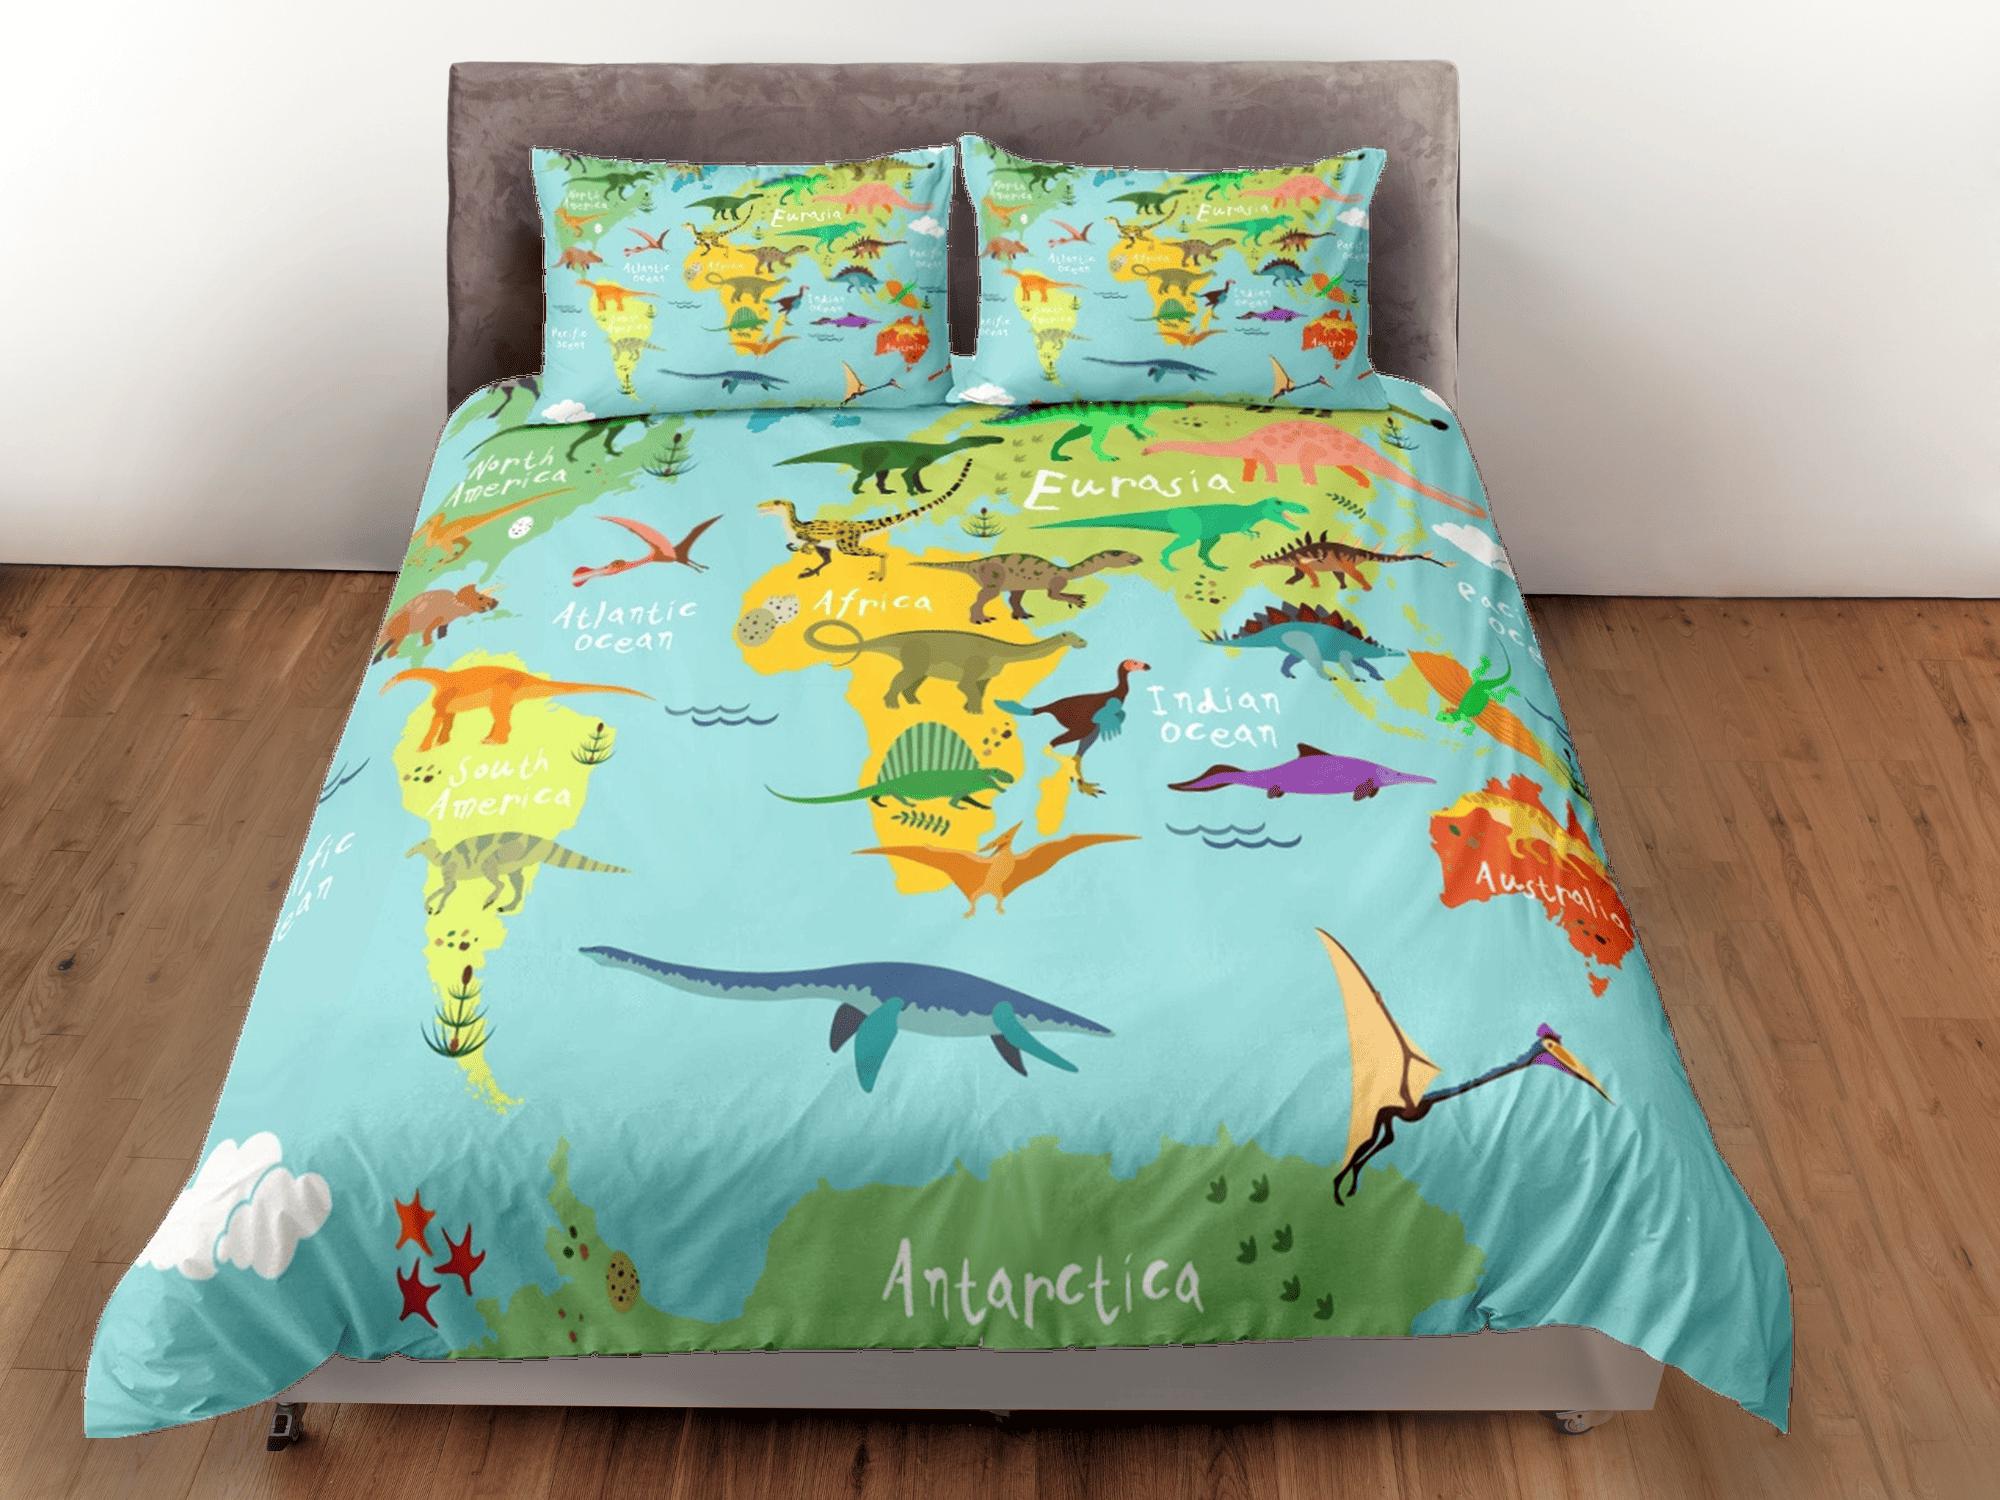 daintyduvet World map dinosaur bedding, kids bedding full, cute duvet cover set, dinosaur nursery bed decor, colorful bedding, baby dinosaur, toddler